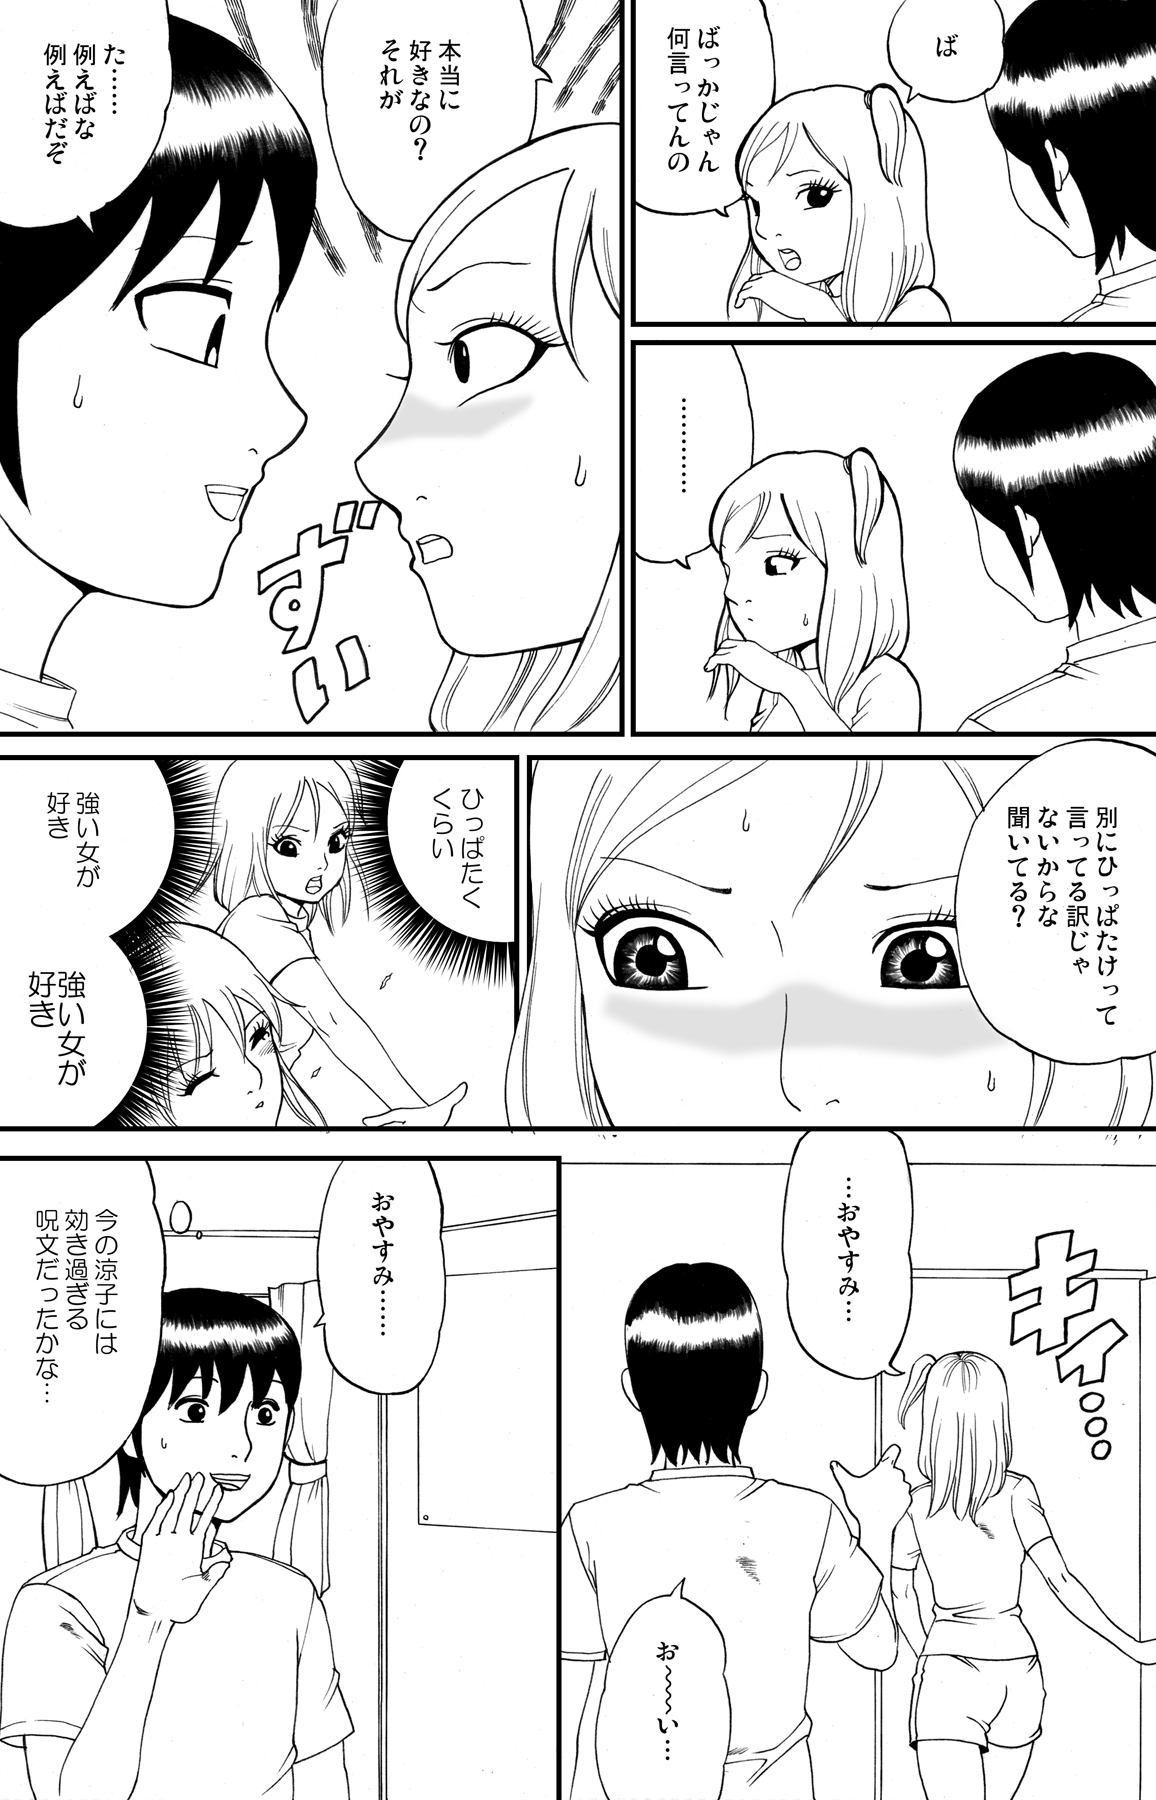 [nekomajin] fuwapoyo page 11 full